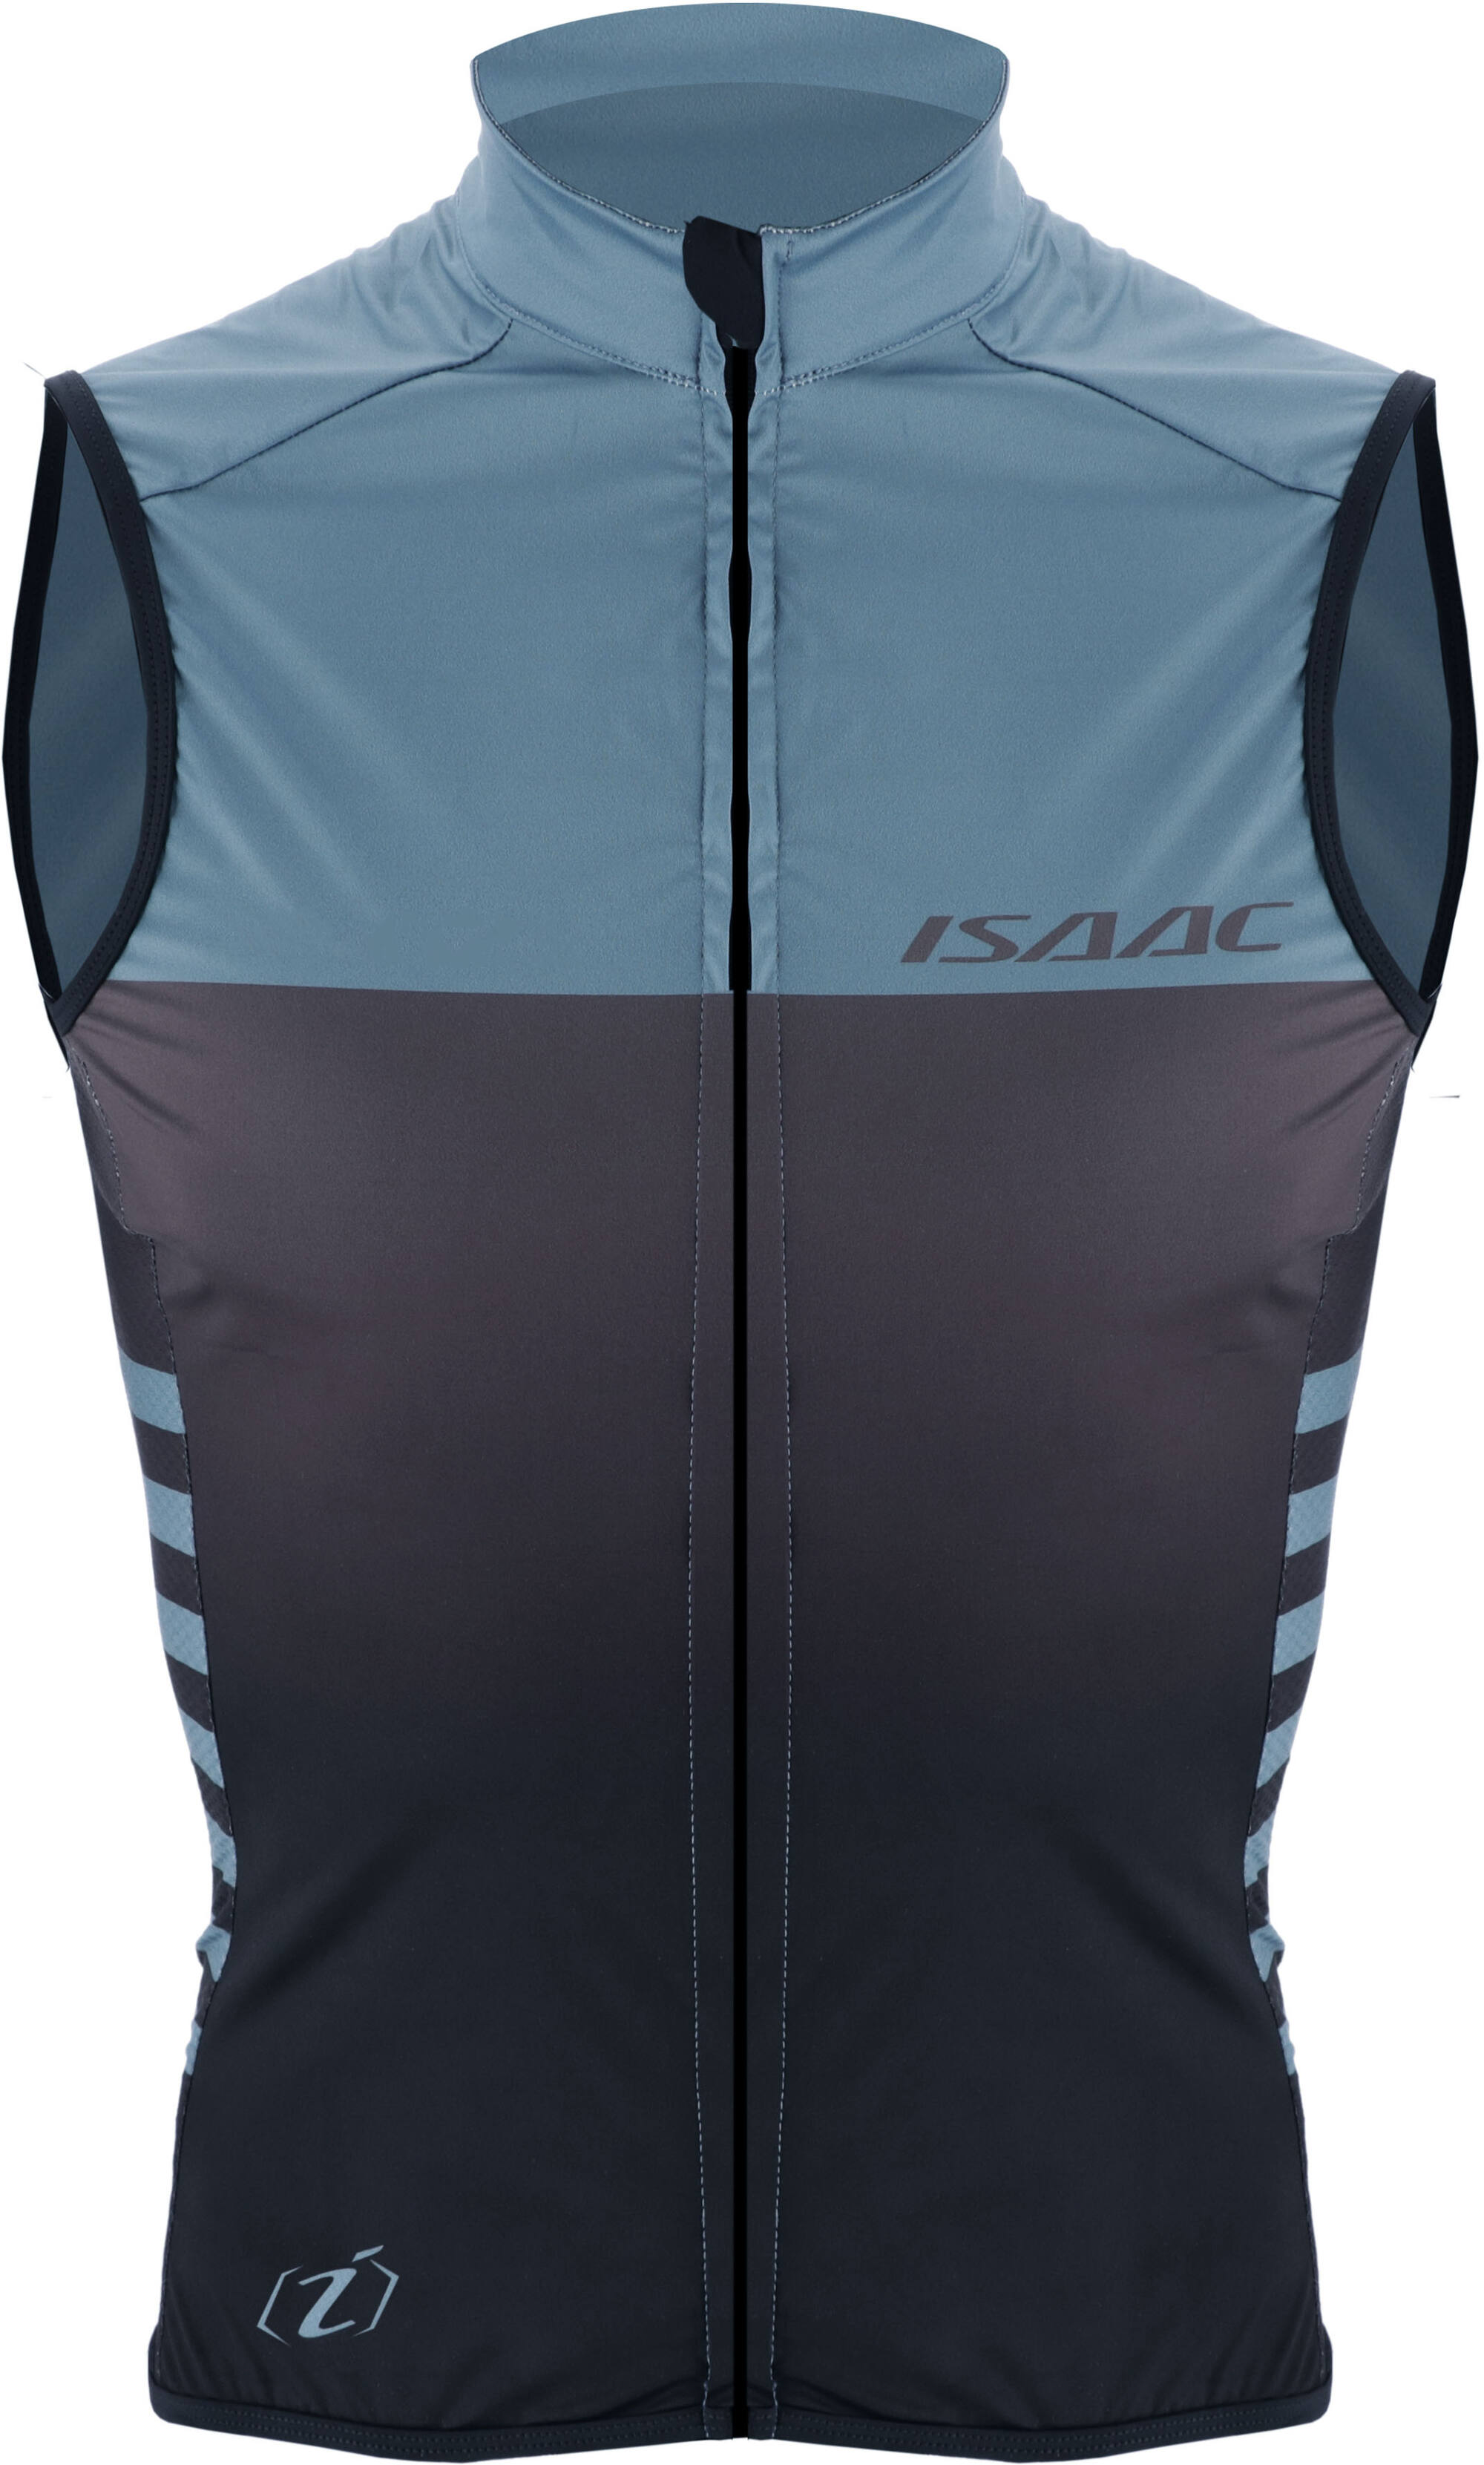 Isaac - Windjacket Teamwear maat S